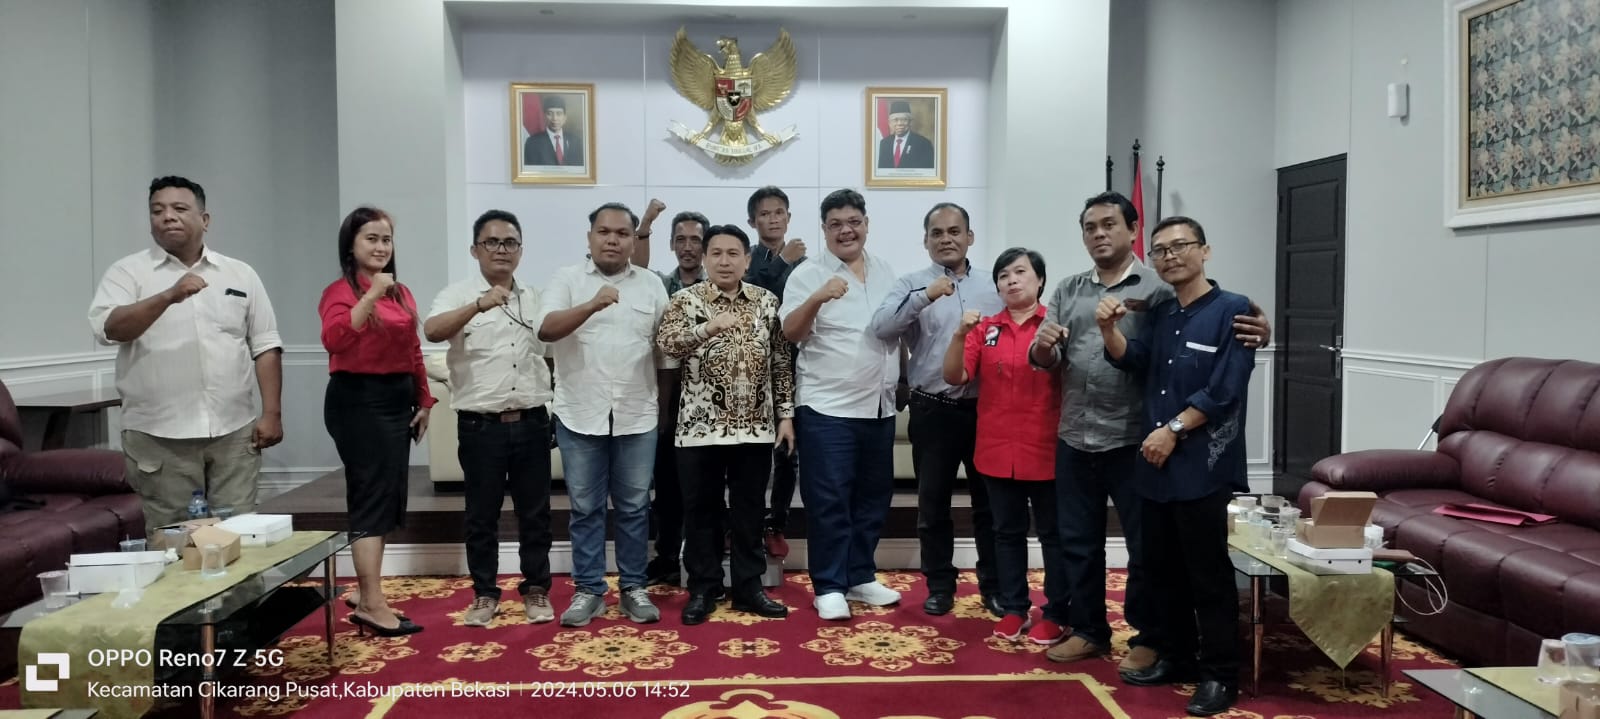 Silahturahmi AWIBB Kepada BN Holik Ketua DPRD Kabupaten Bekasi